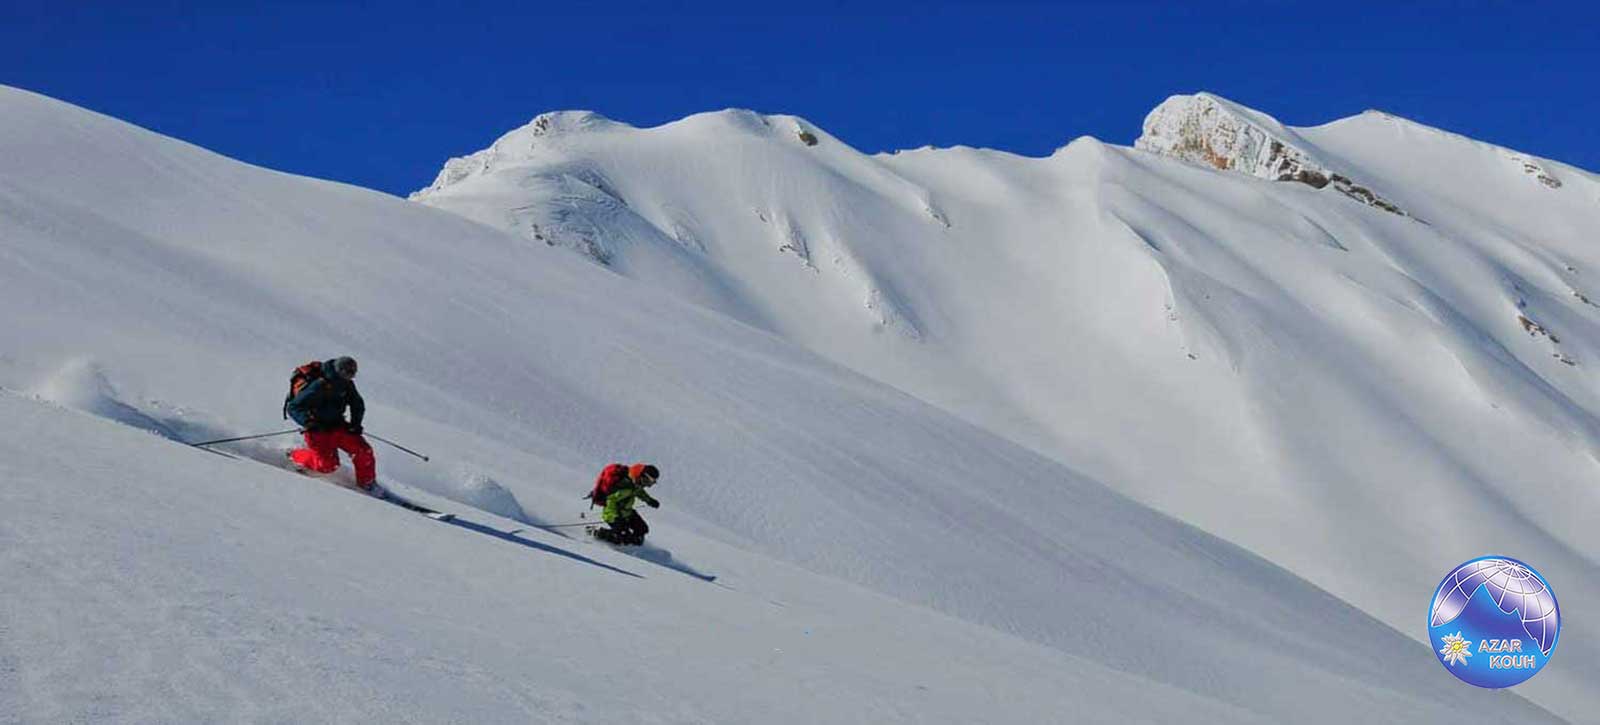 Zagros ski tour